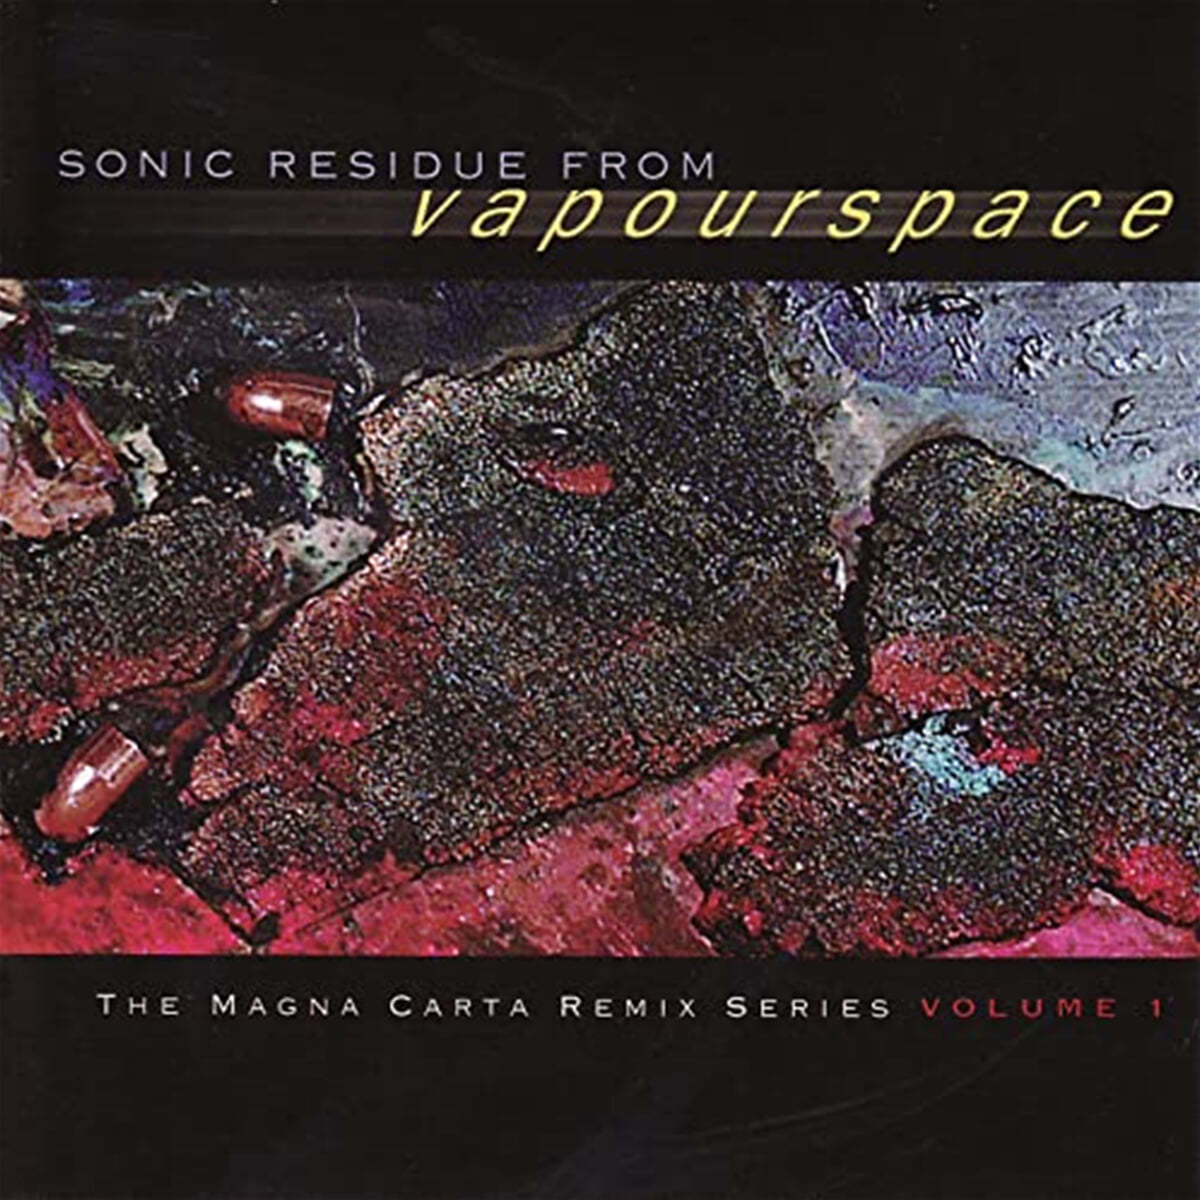 마그나 카타 리믹스 시리즈 1집 (Sonic Residue From Vapourspace - The Magna Carta Remix Series Volume 1) 